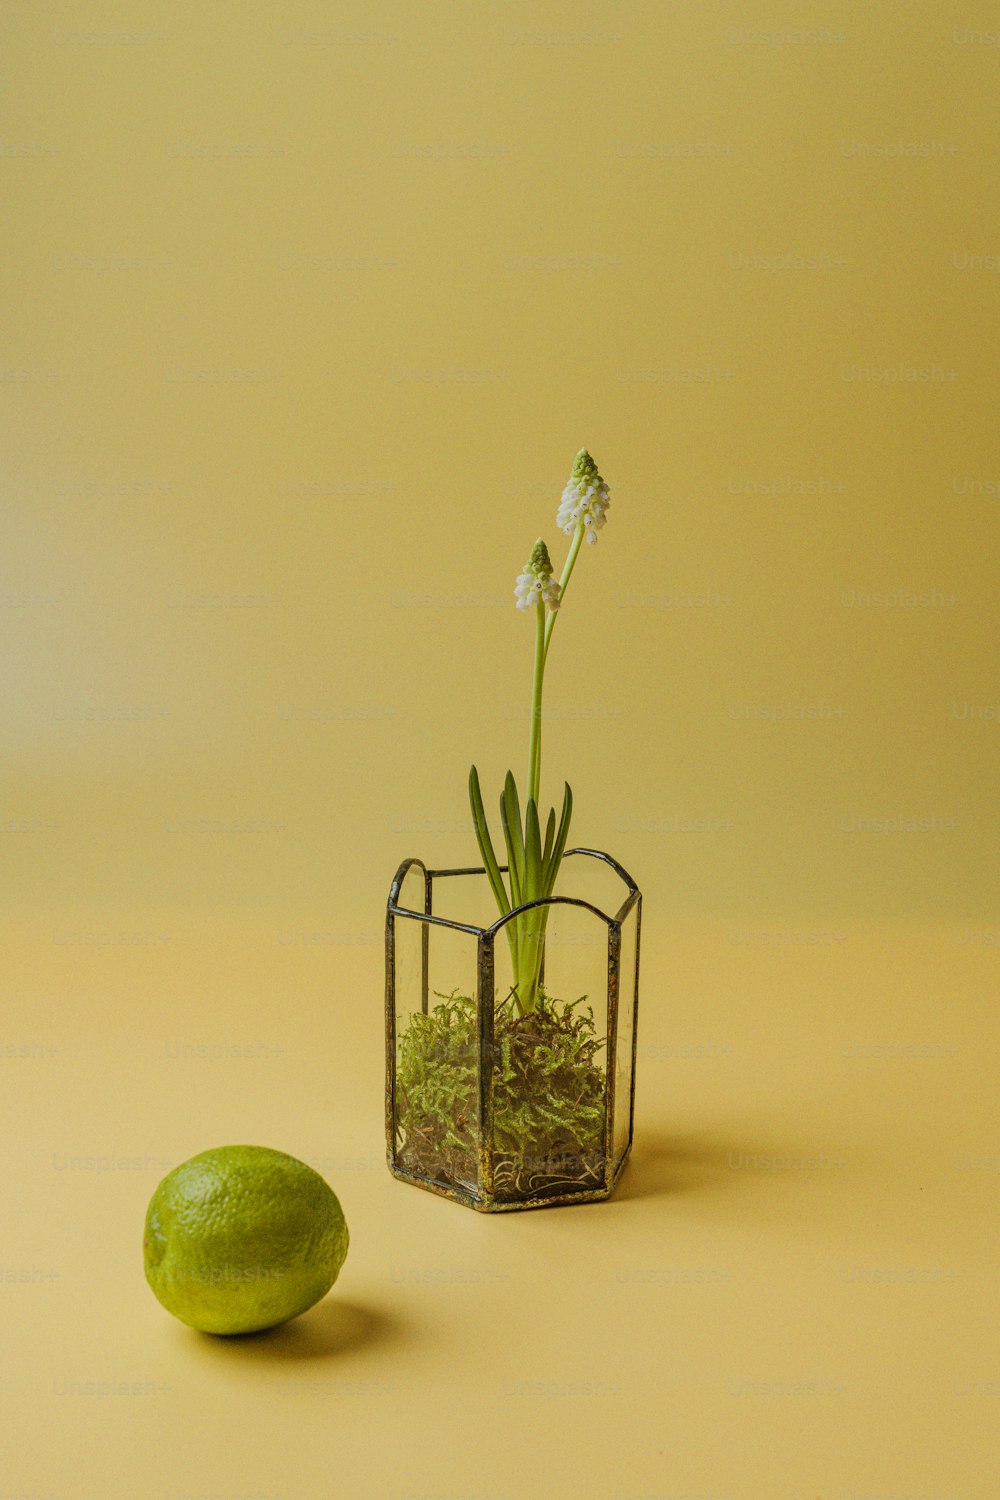 eine kleine Glasvase mit einer Pflanze darin neben einer Limette